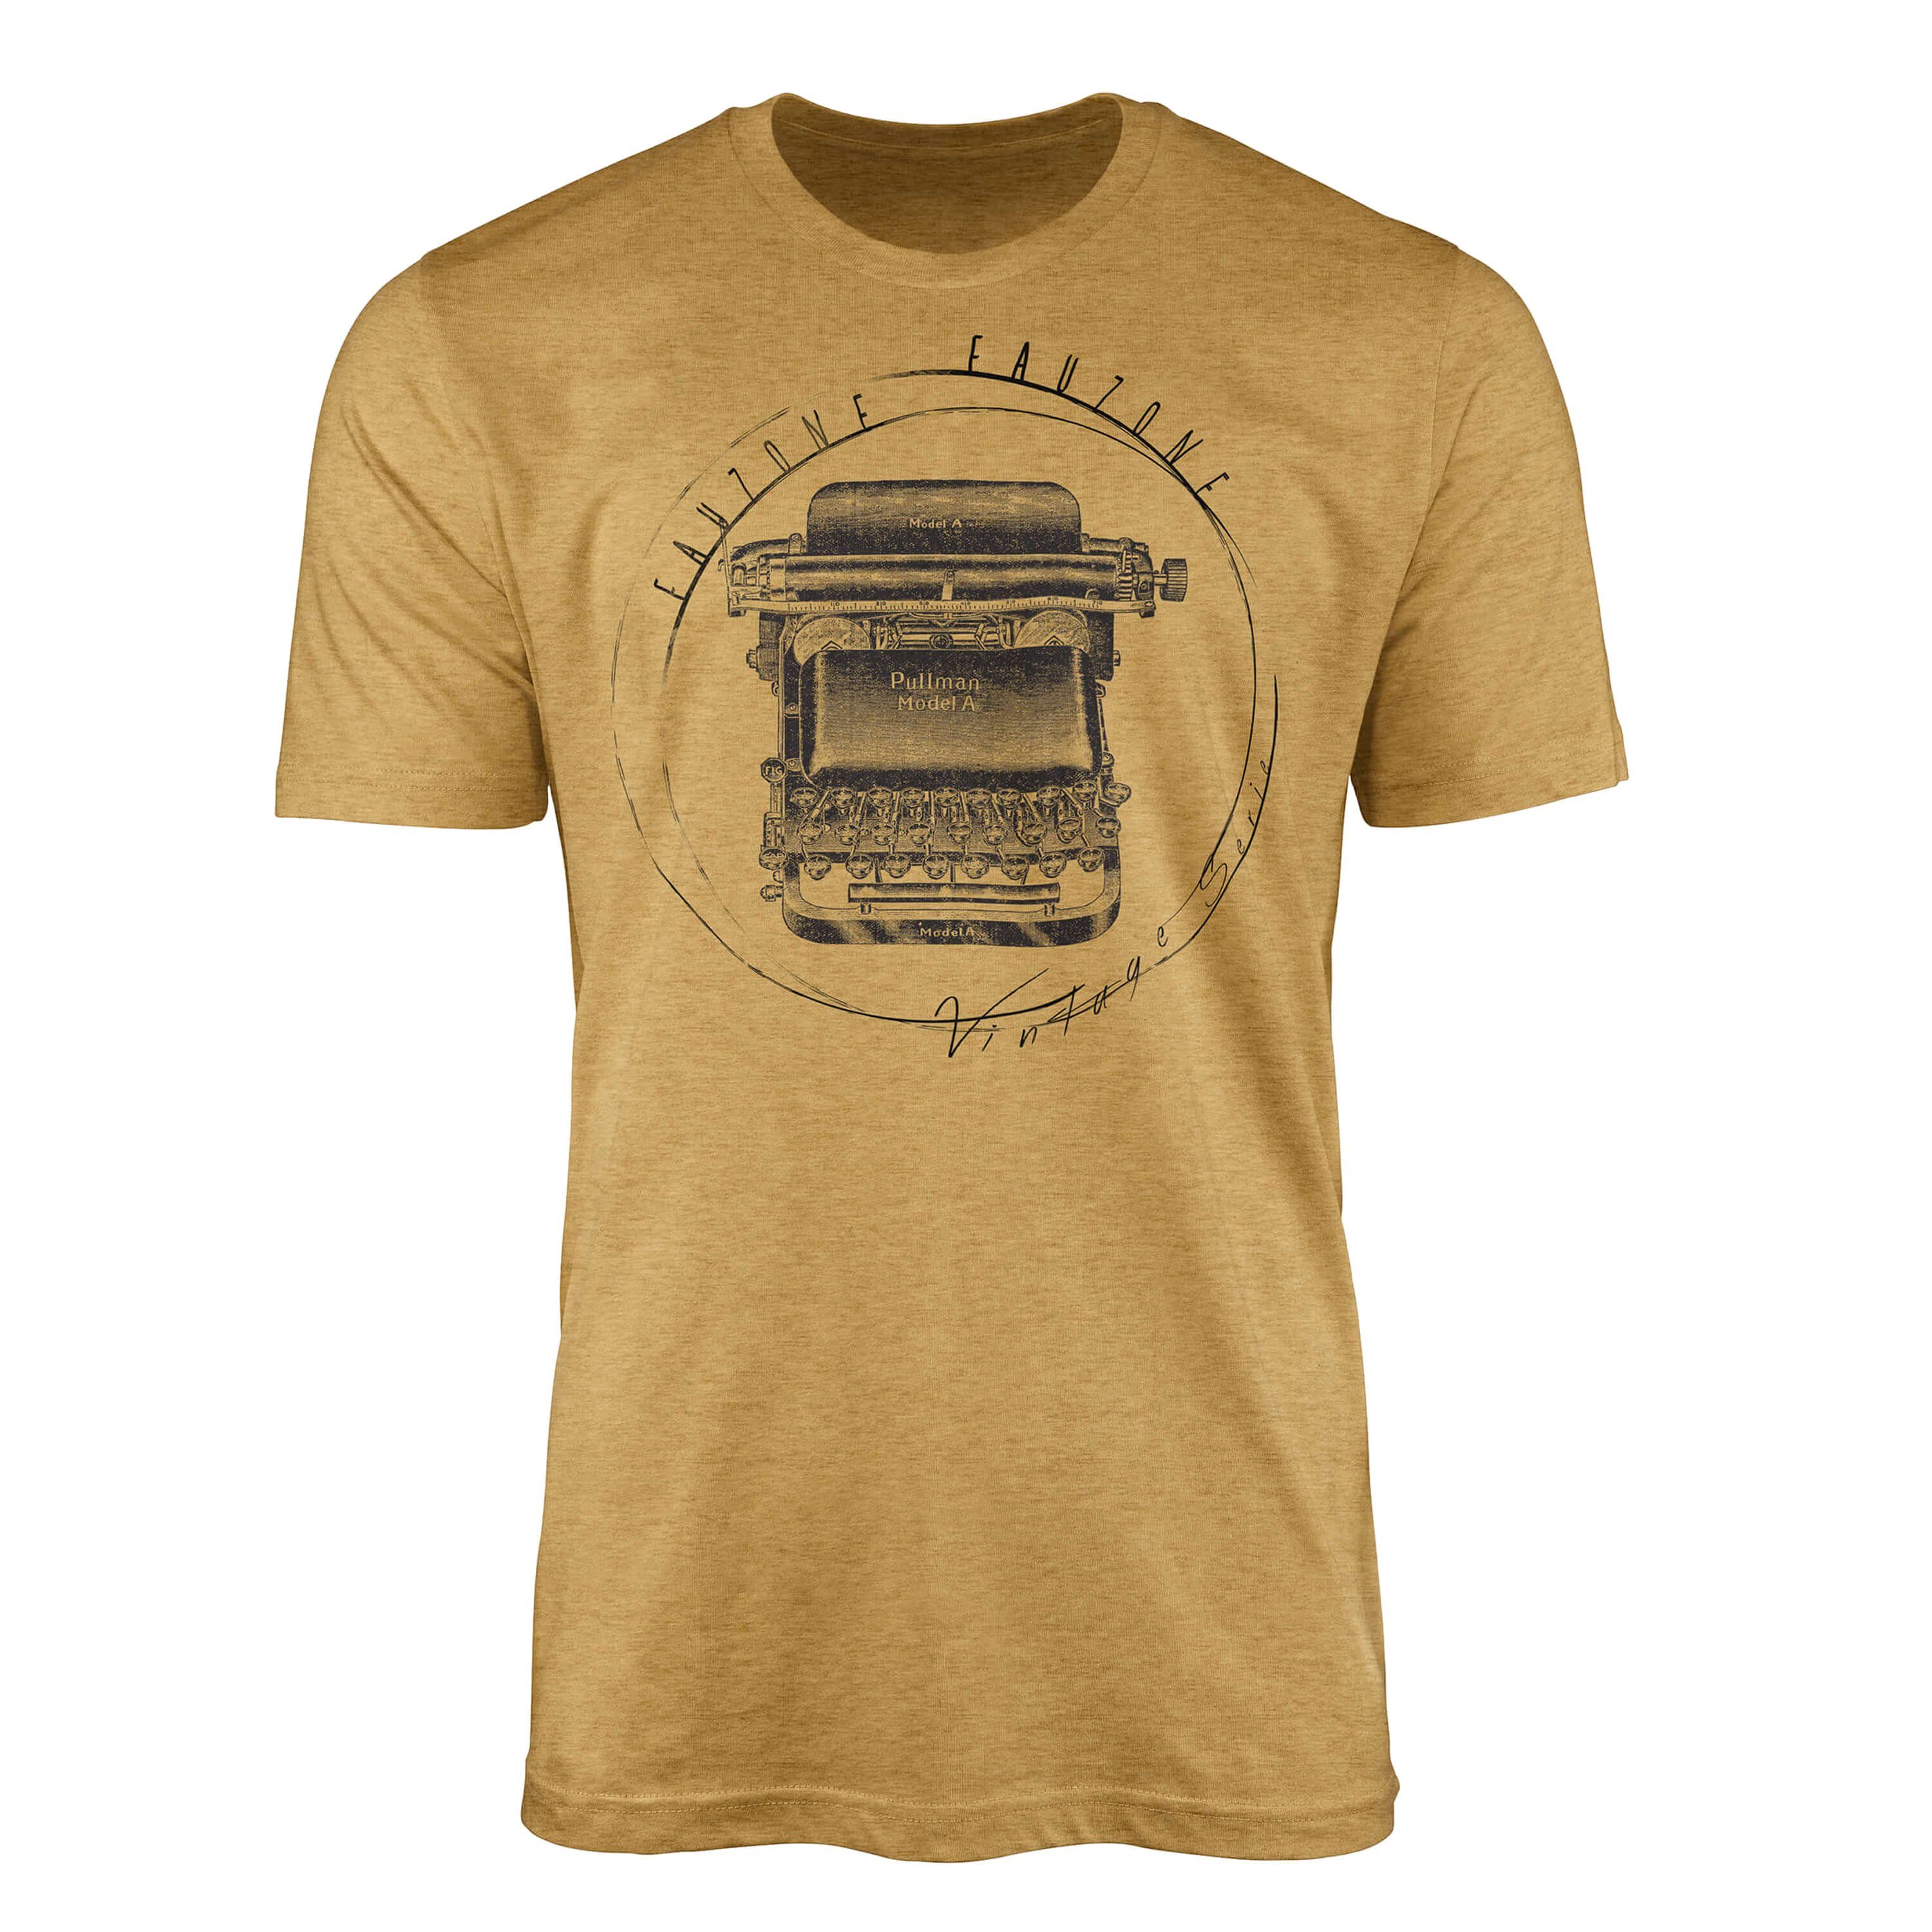 Sinus Art T-Shirt Vintage Herren T-Shirt Schreibmaschine Antique Gold